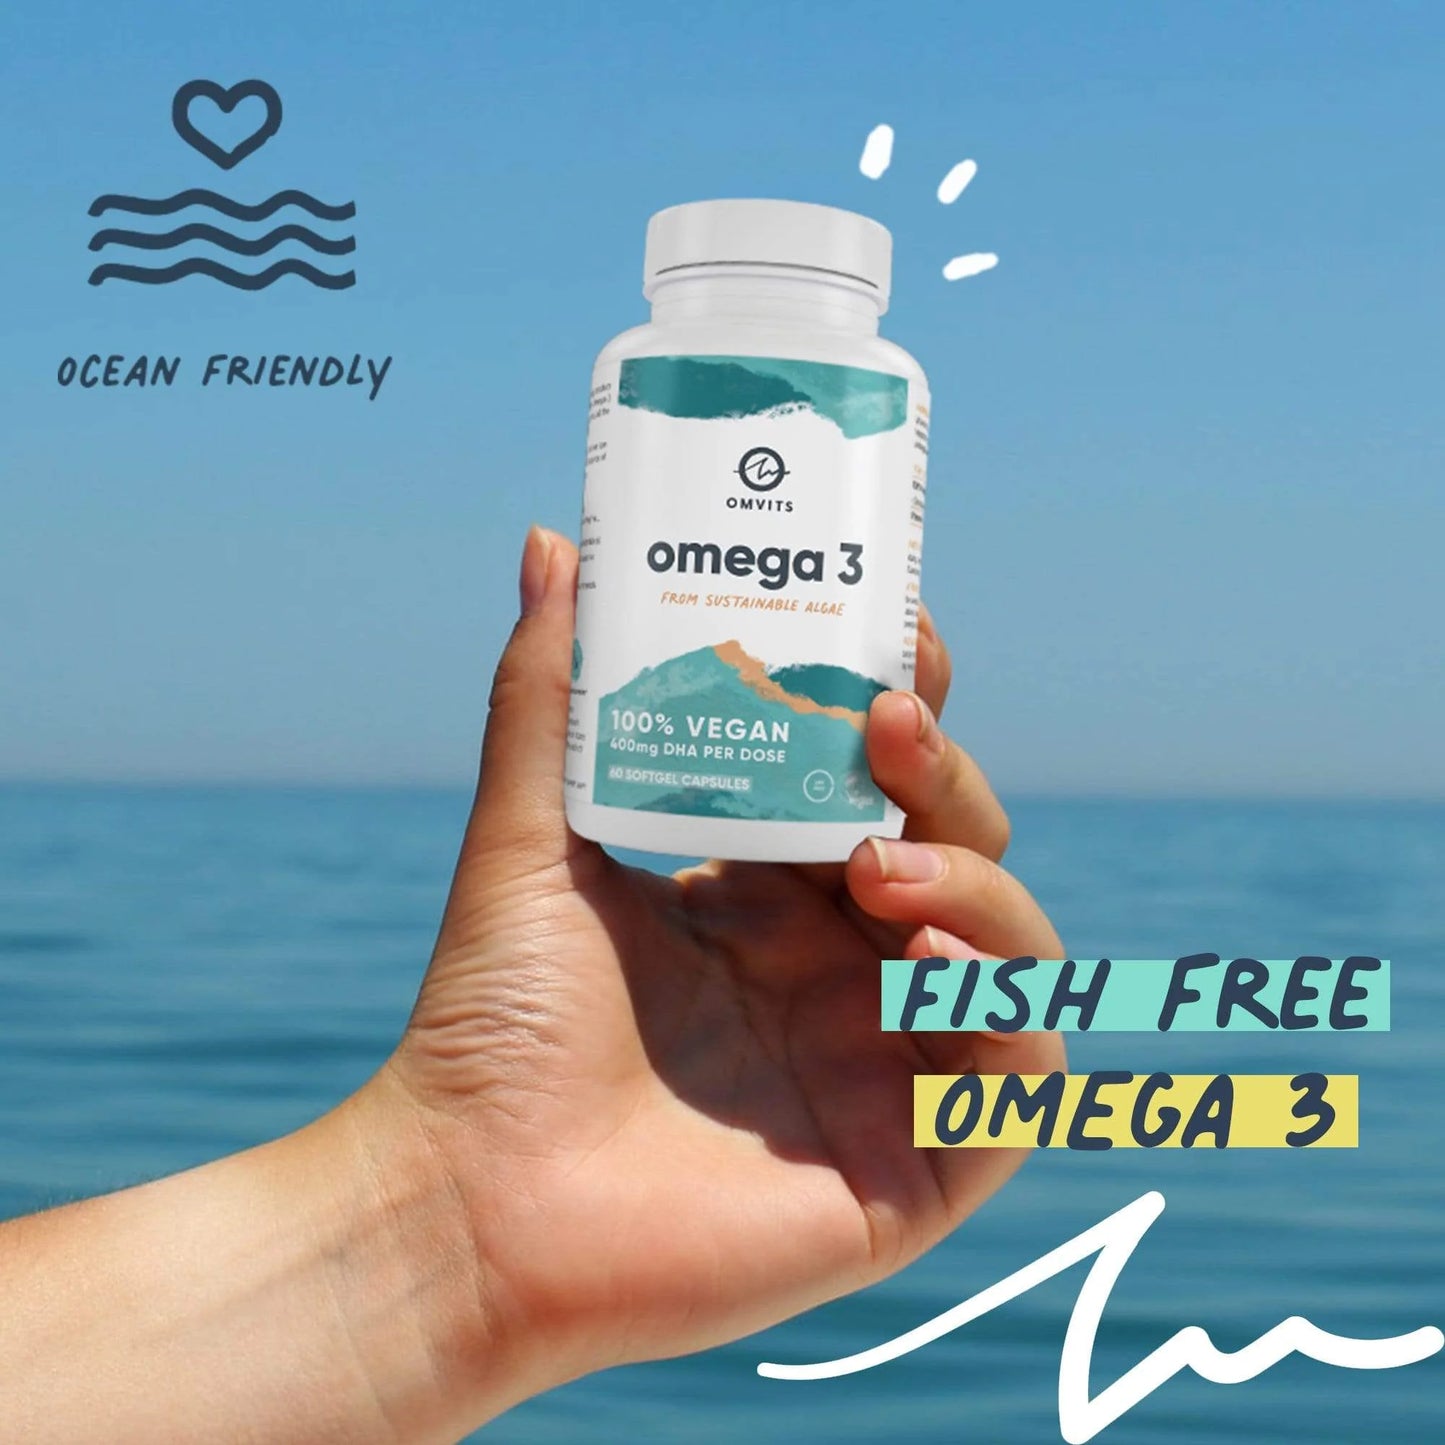 Omvits Omega 3 DHA 400mg Algae 60